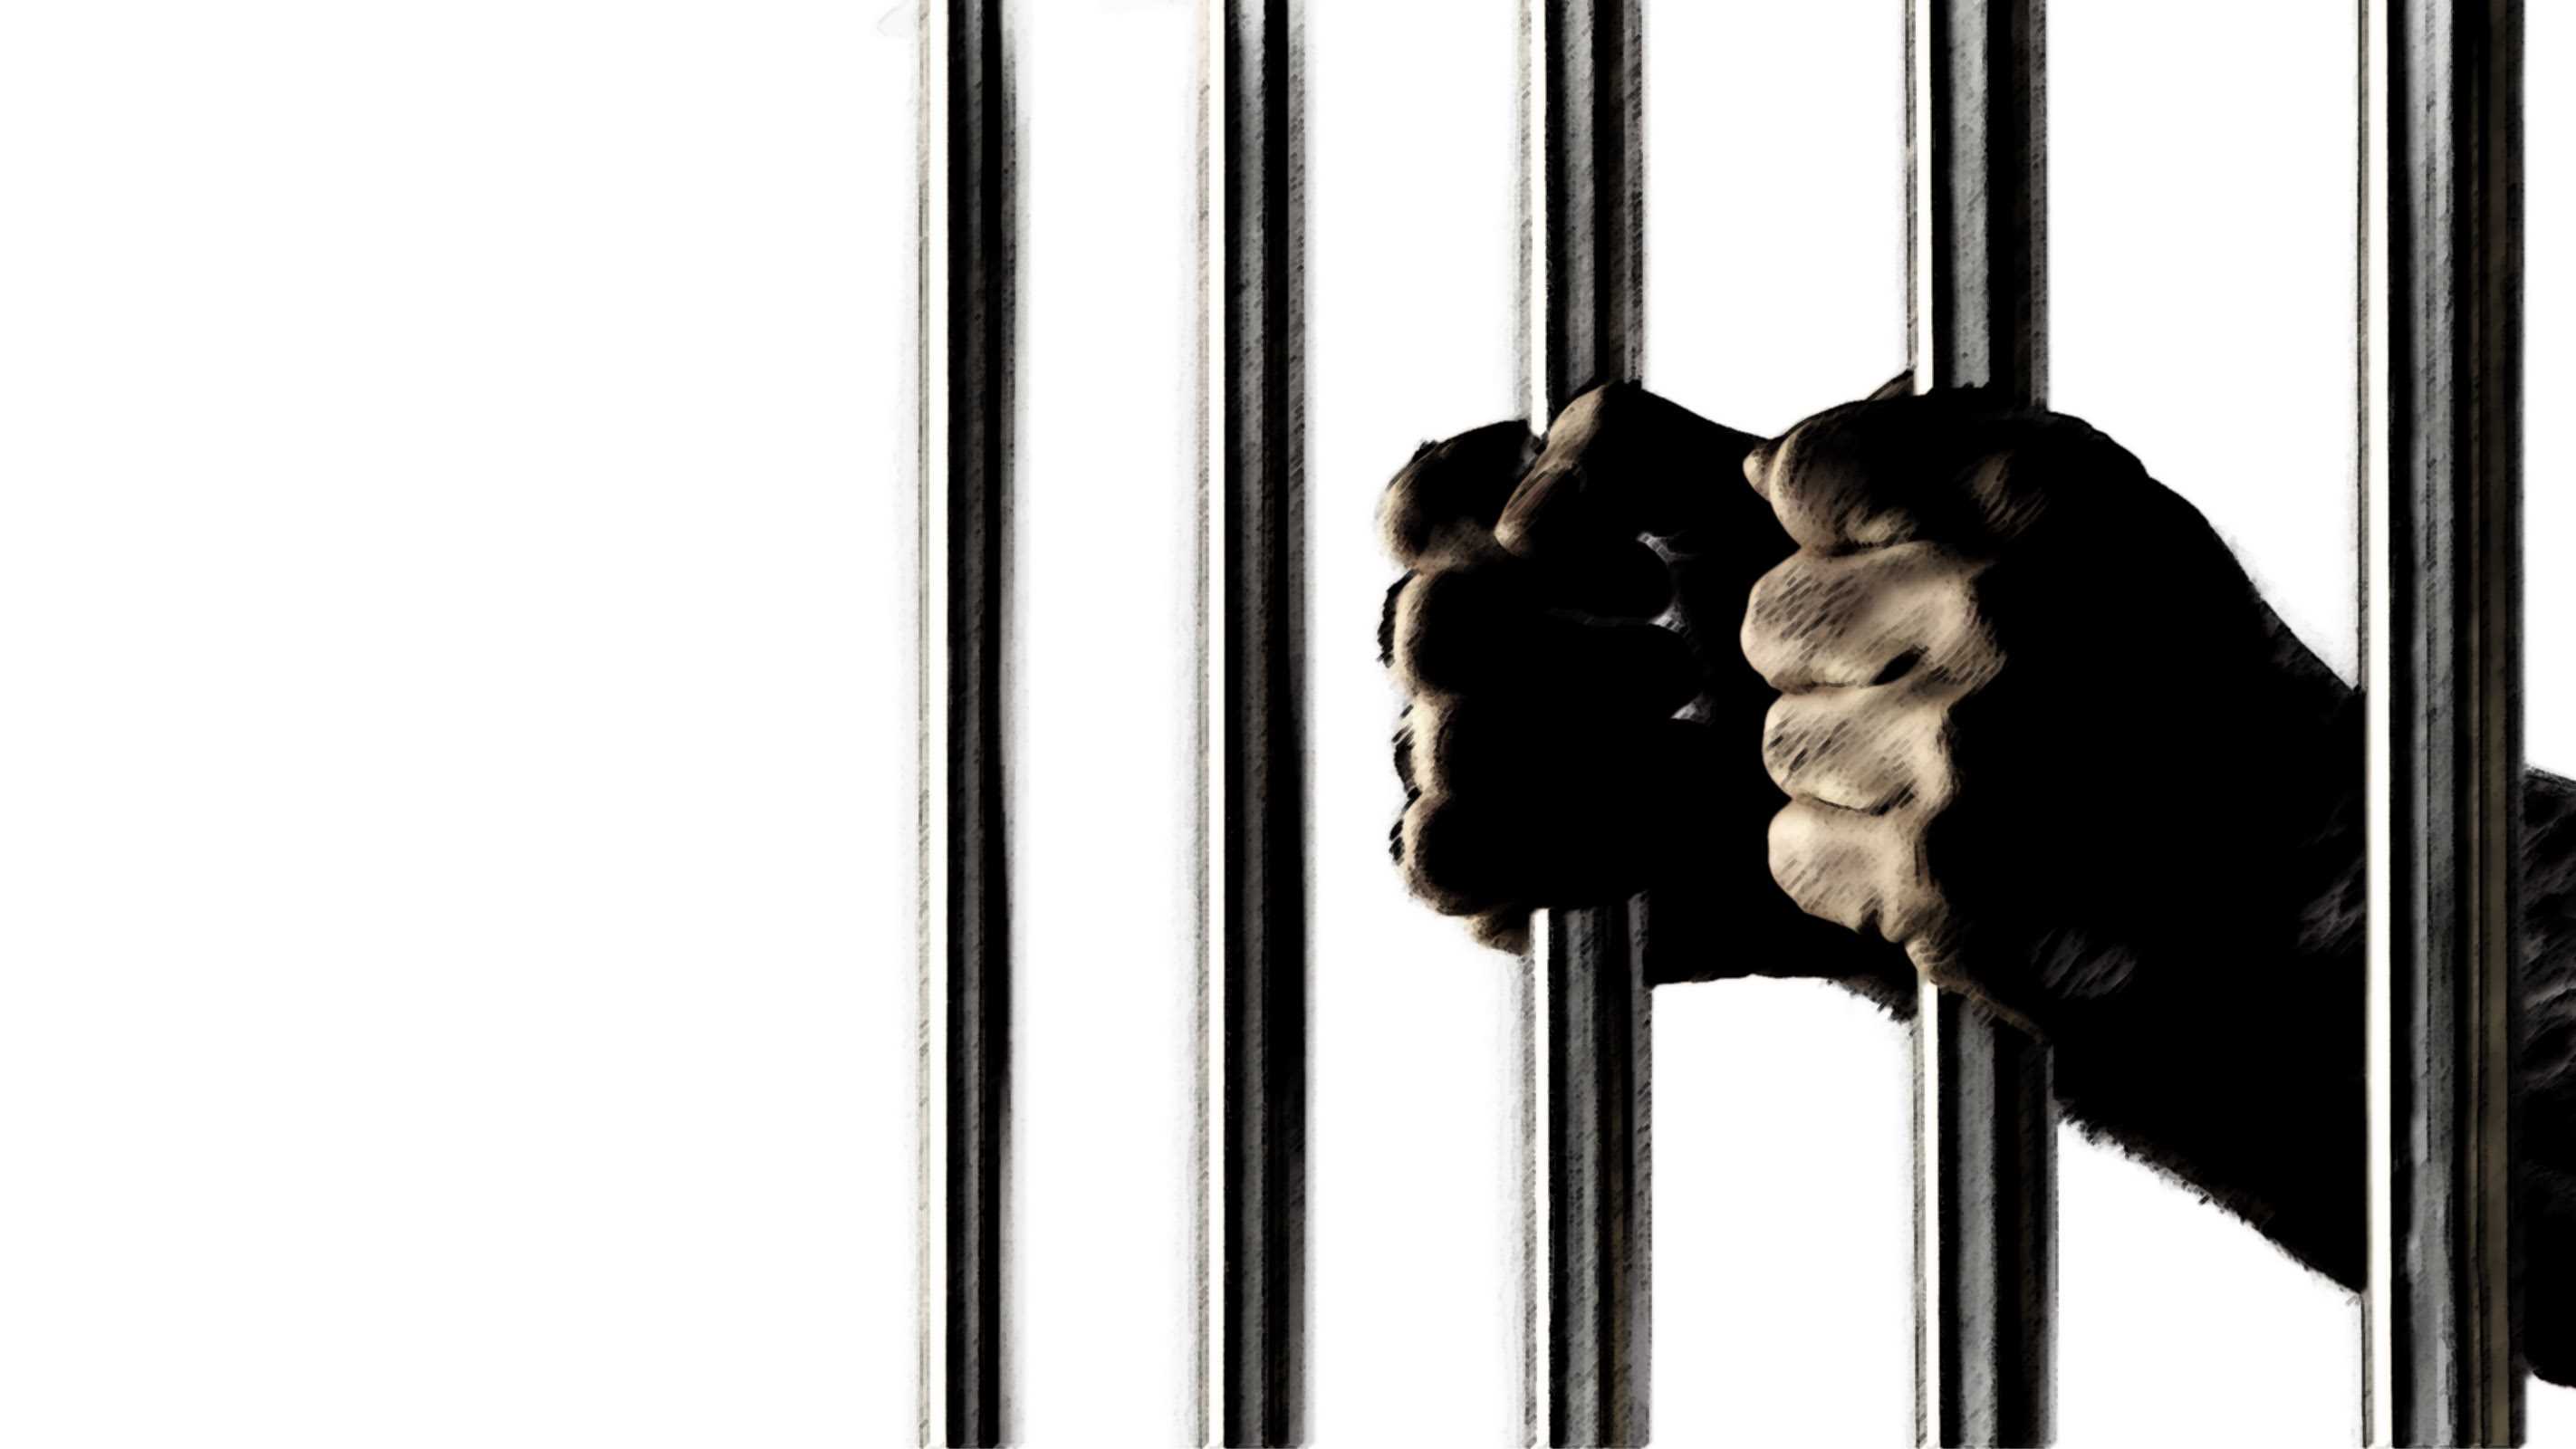 long prison sentences